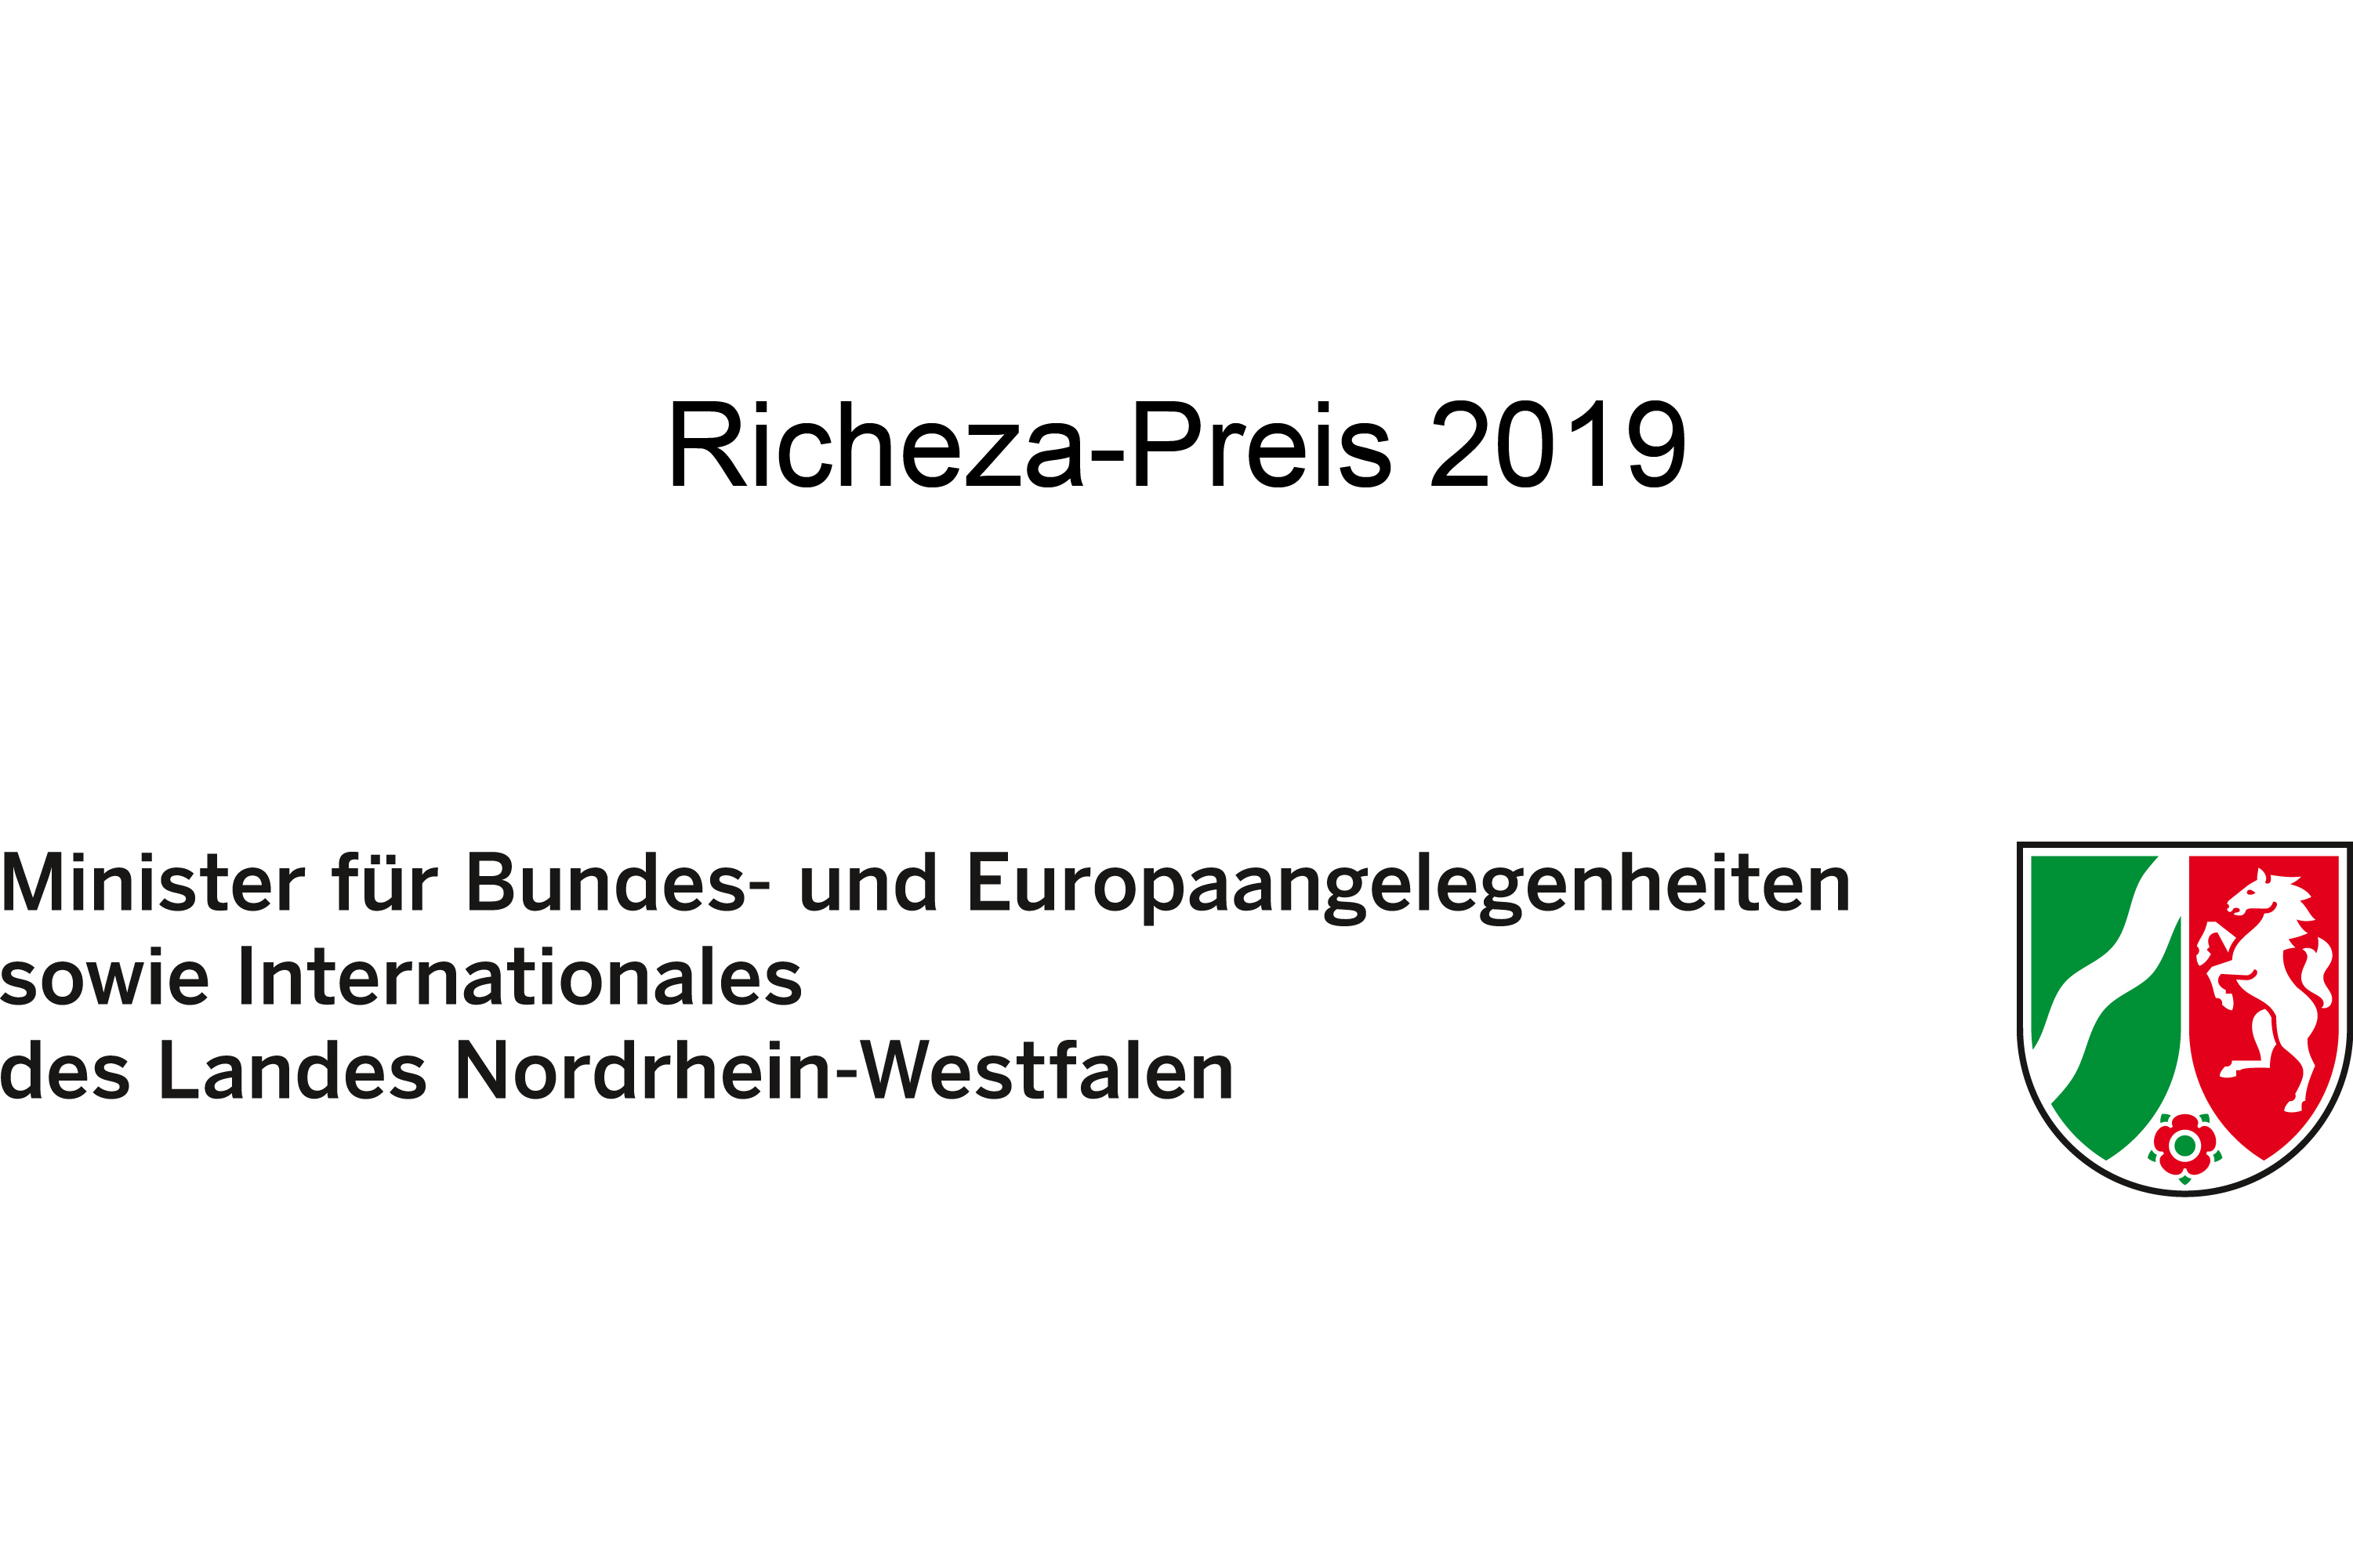 Richeza-Preis 2019